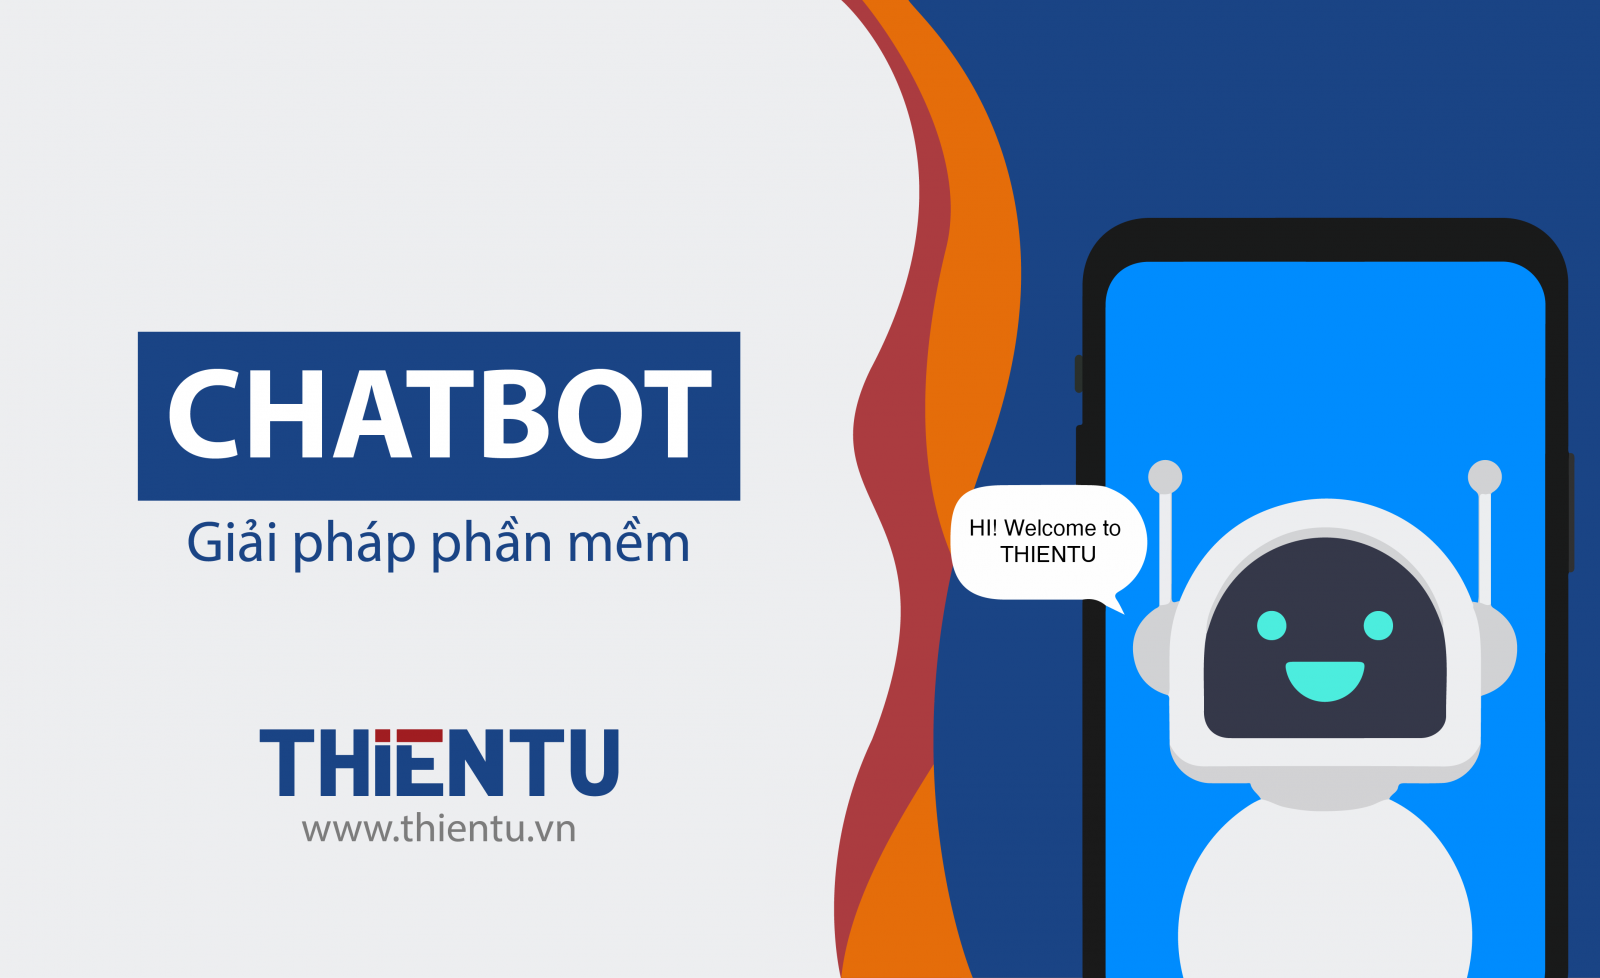 Chatbot là gì?